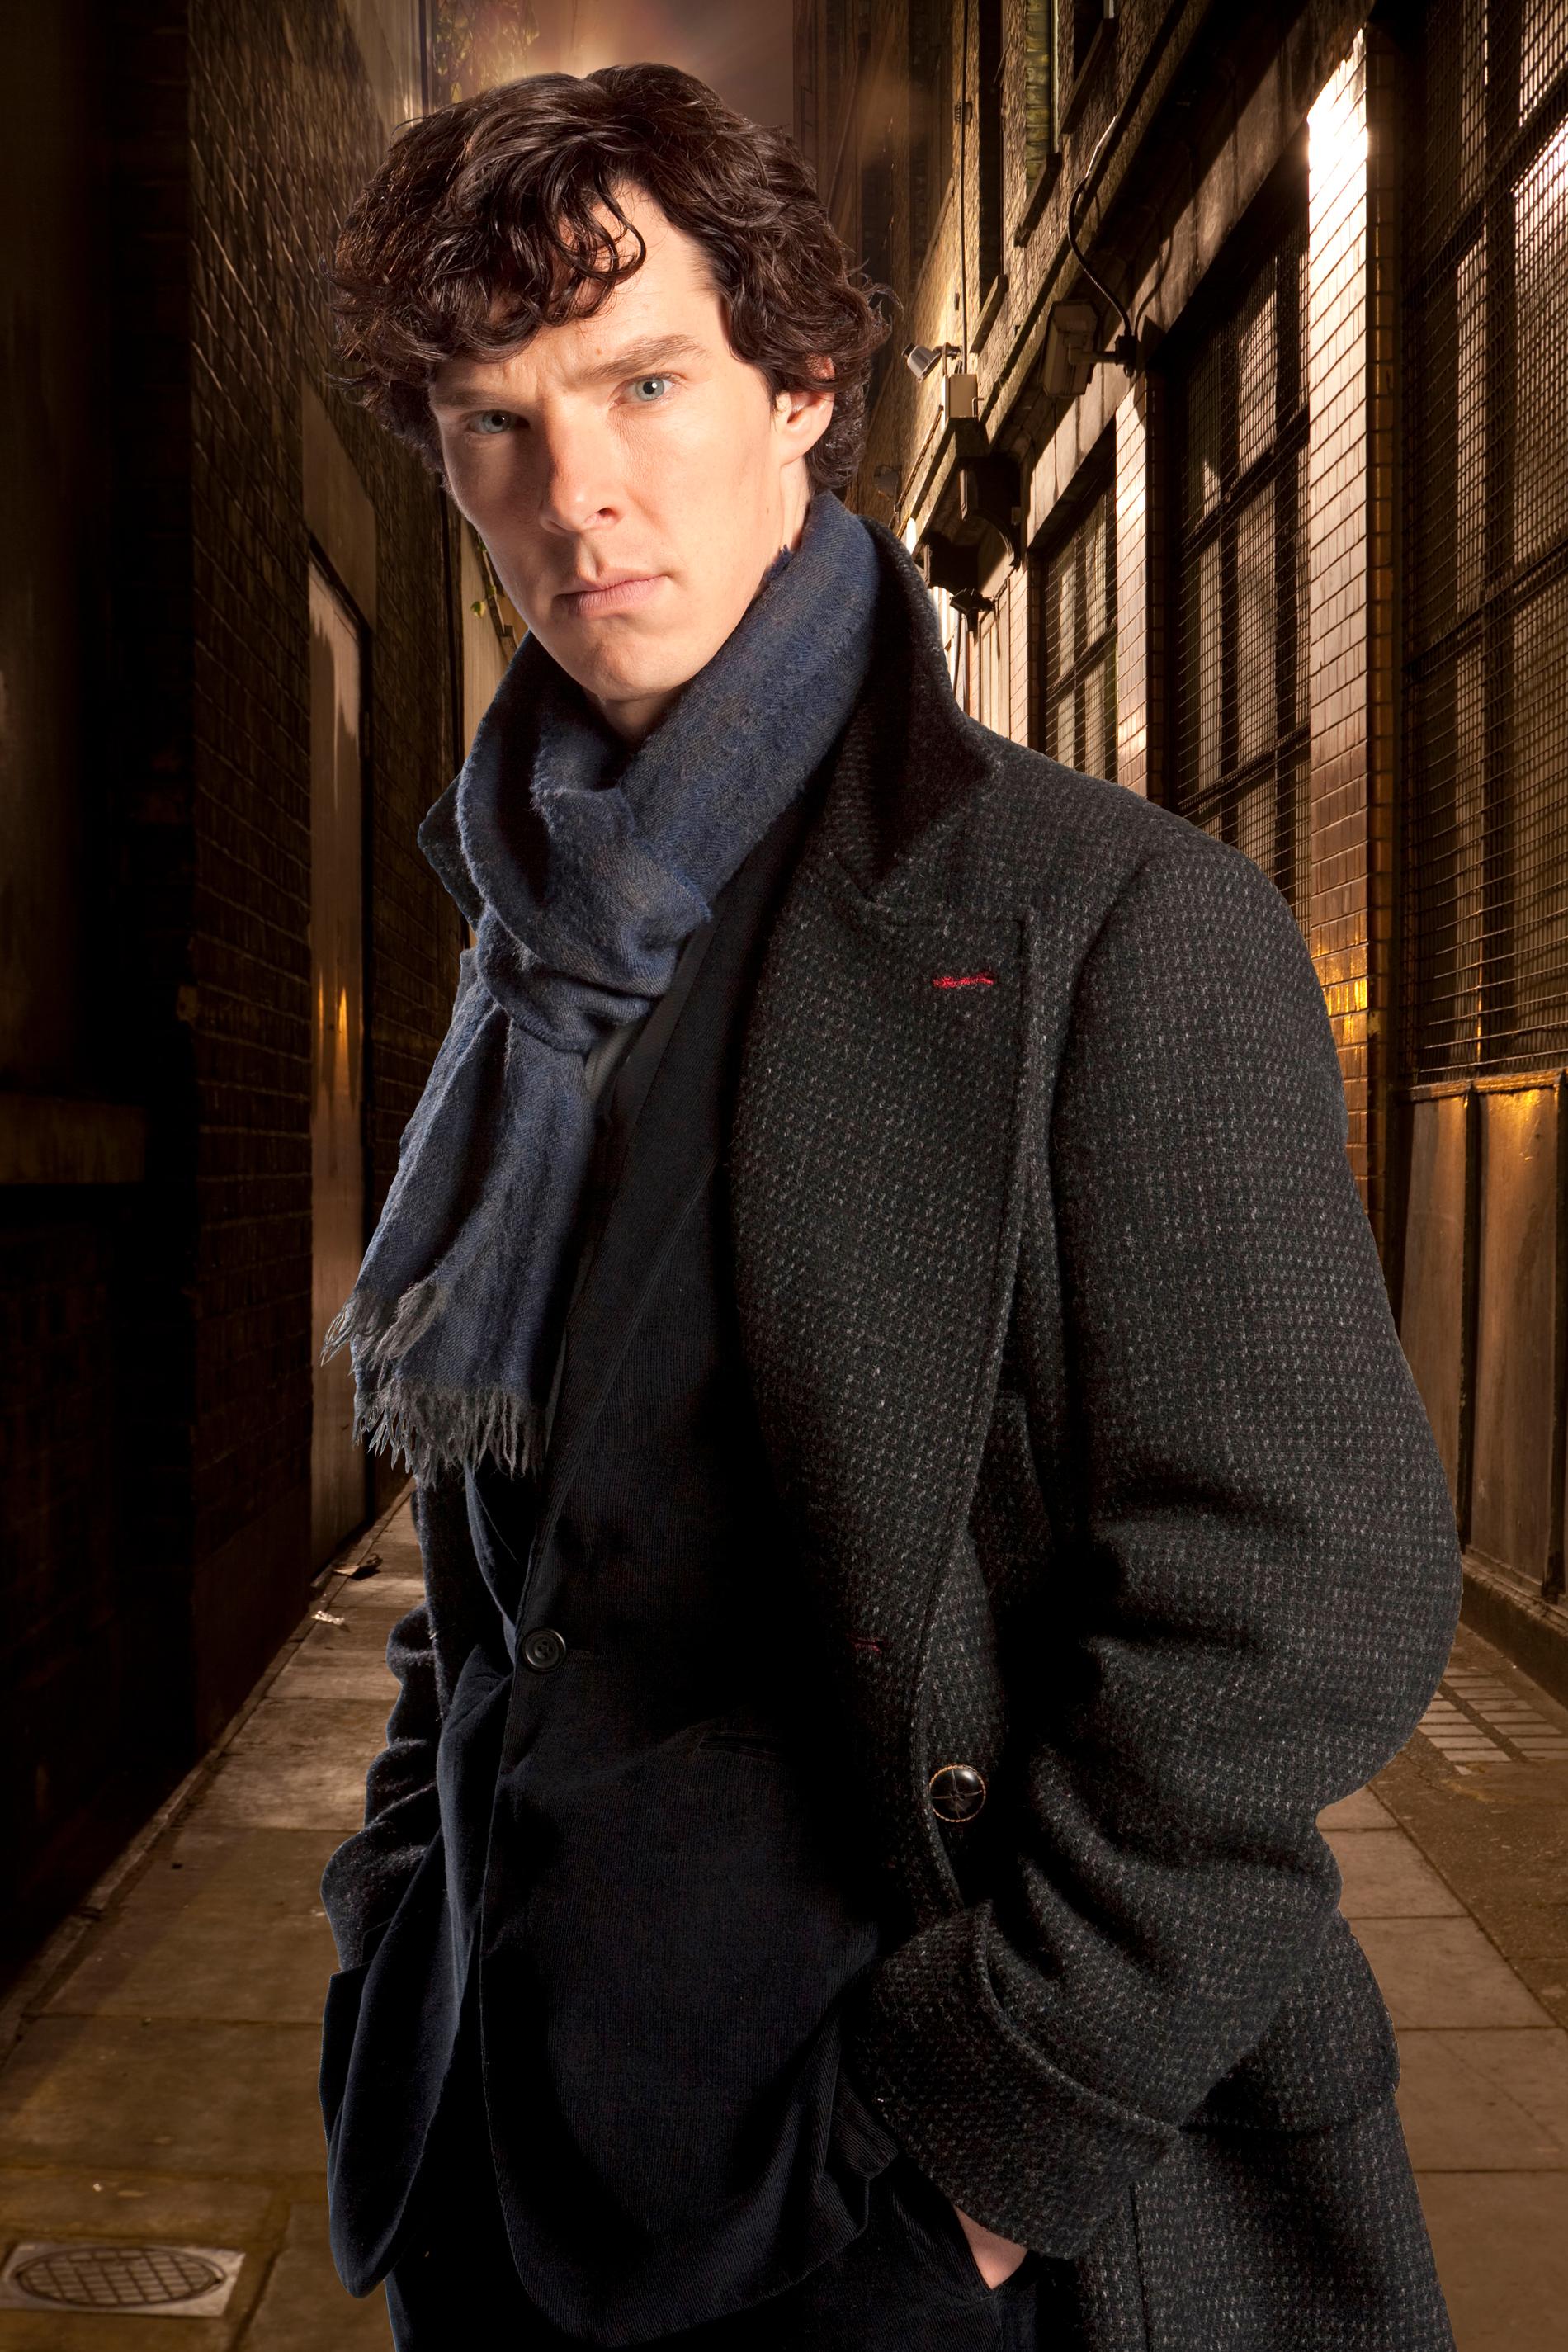 Under de senaste åren har BBC:s serie "Sherlock" blivit omåttligt populär i hela världen. I serien spelas Holmes av Benedict Cumberbatch.